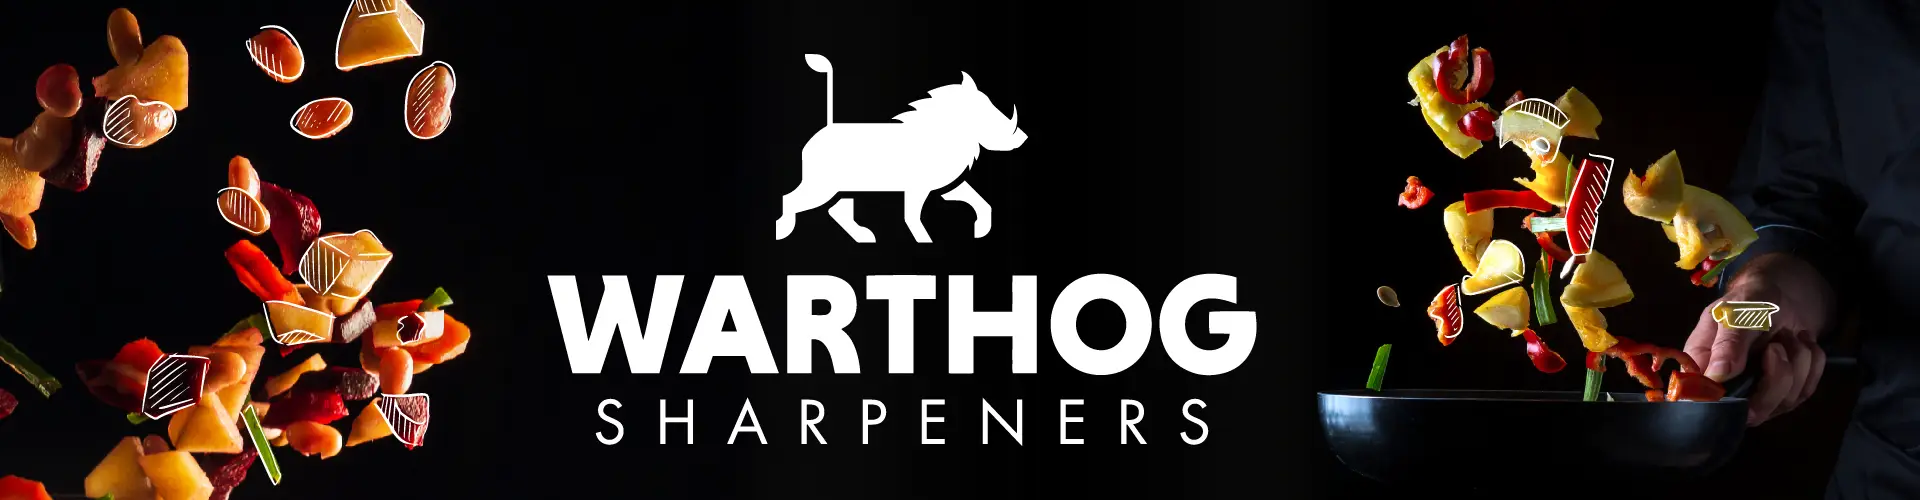 Warthog Sharpeners Banner mit Logo